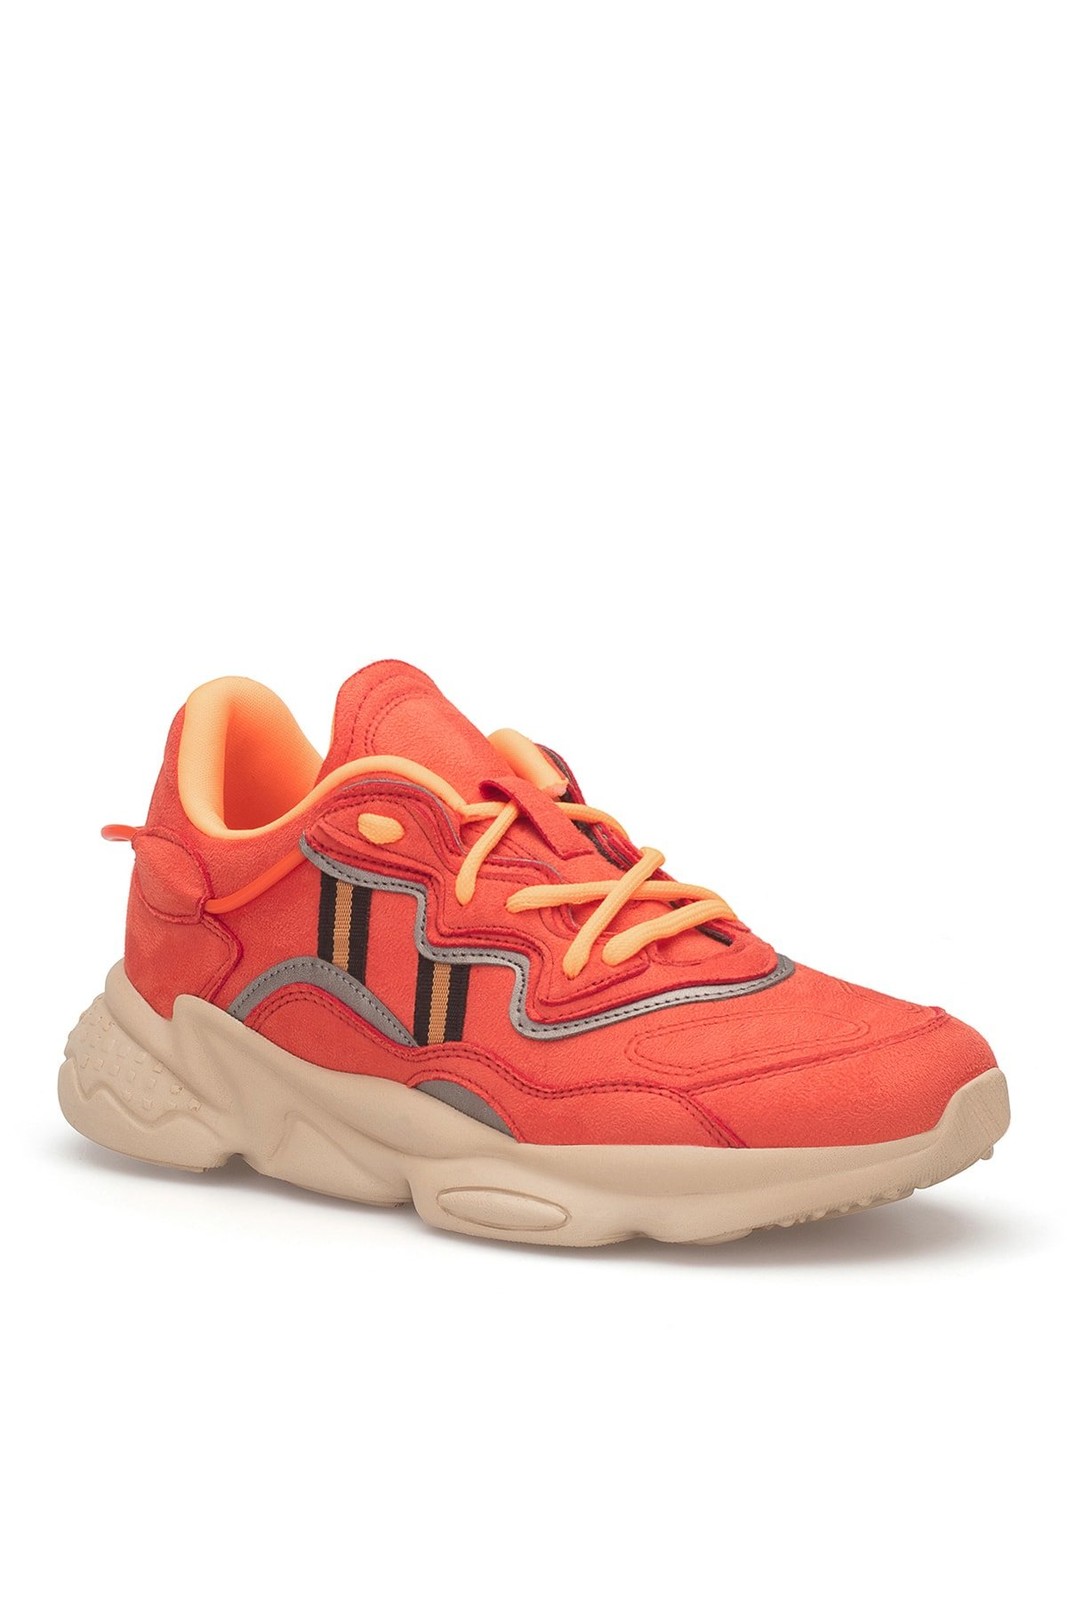 DARK SEER Orange Unisex Sneakers